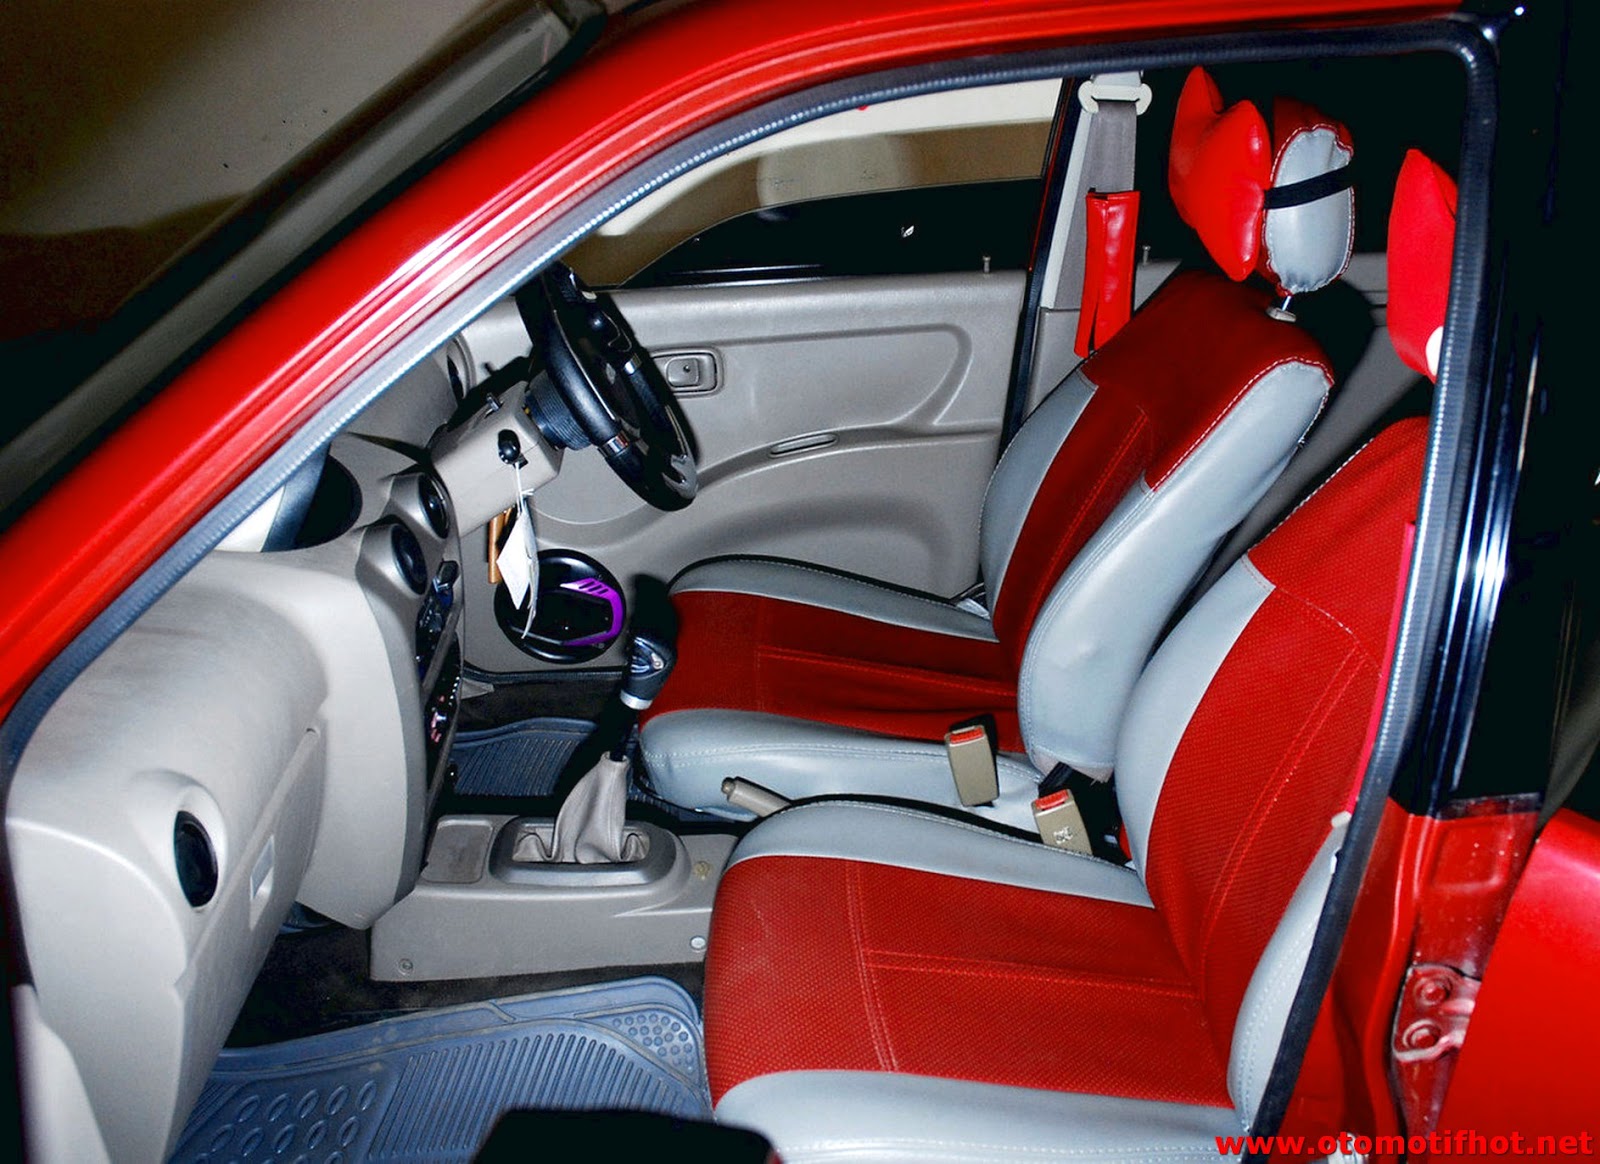 730 Modifikasi Interior Mobil Avanza Terbaru Terbaik